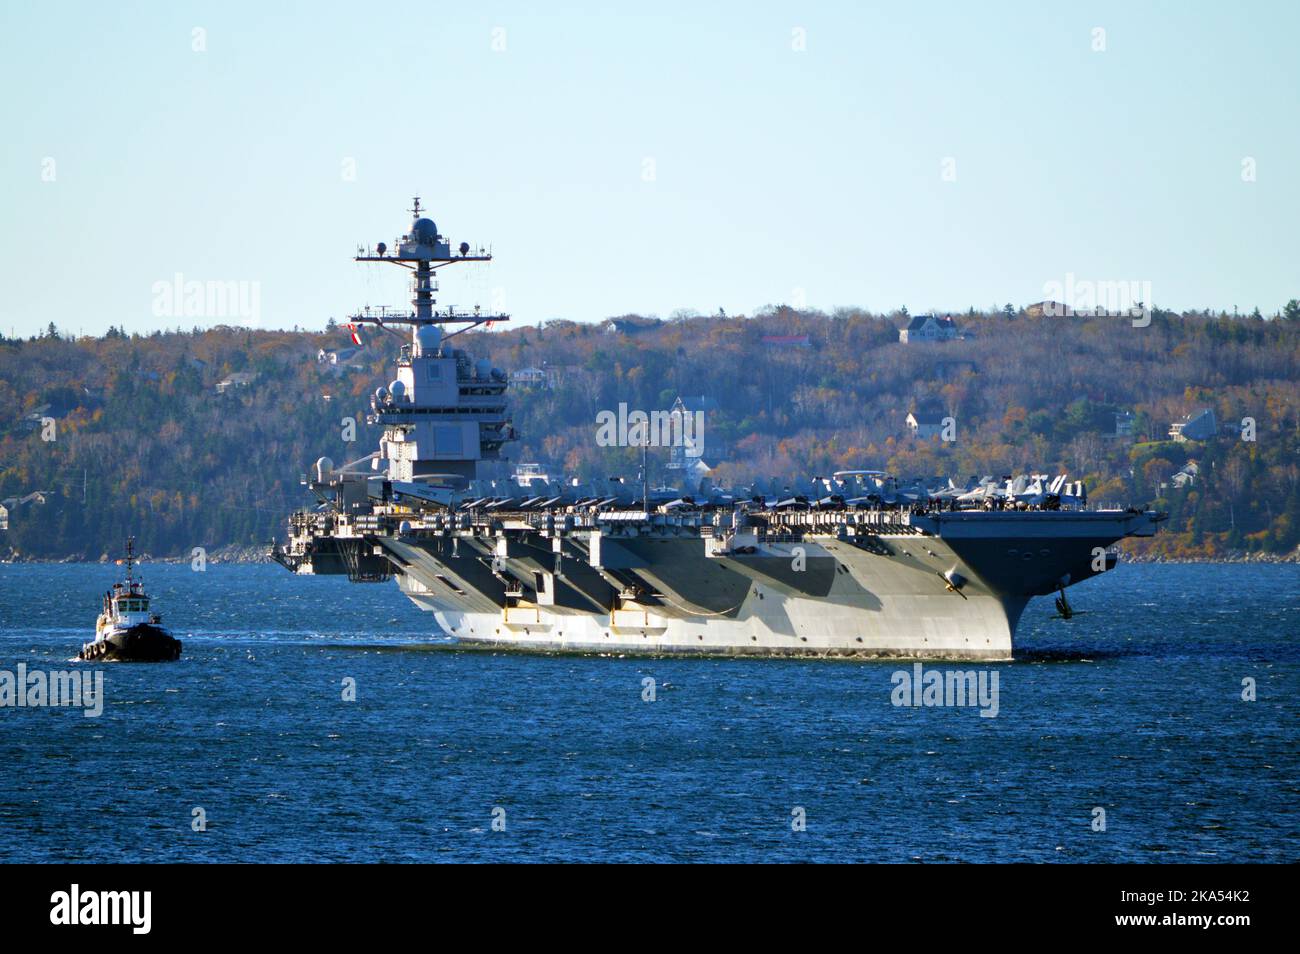 La portaerei americana USS Gerald R. Ford (CVN-78), la più grande al mondo, durante la sua prima visita al porto d'oltremare a Halifax, Nuova Scozia, Canada (2022) Foto Stock